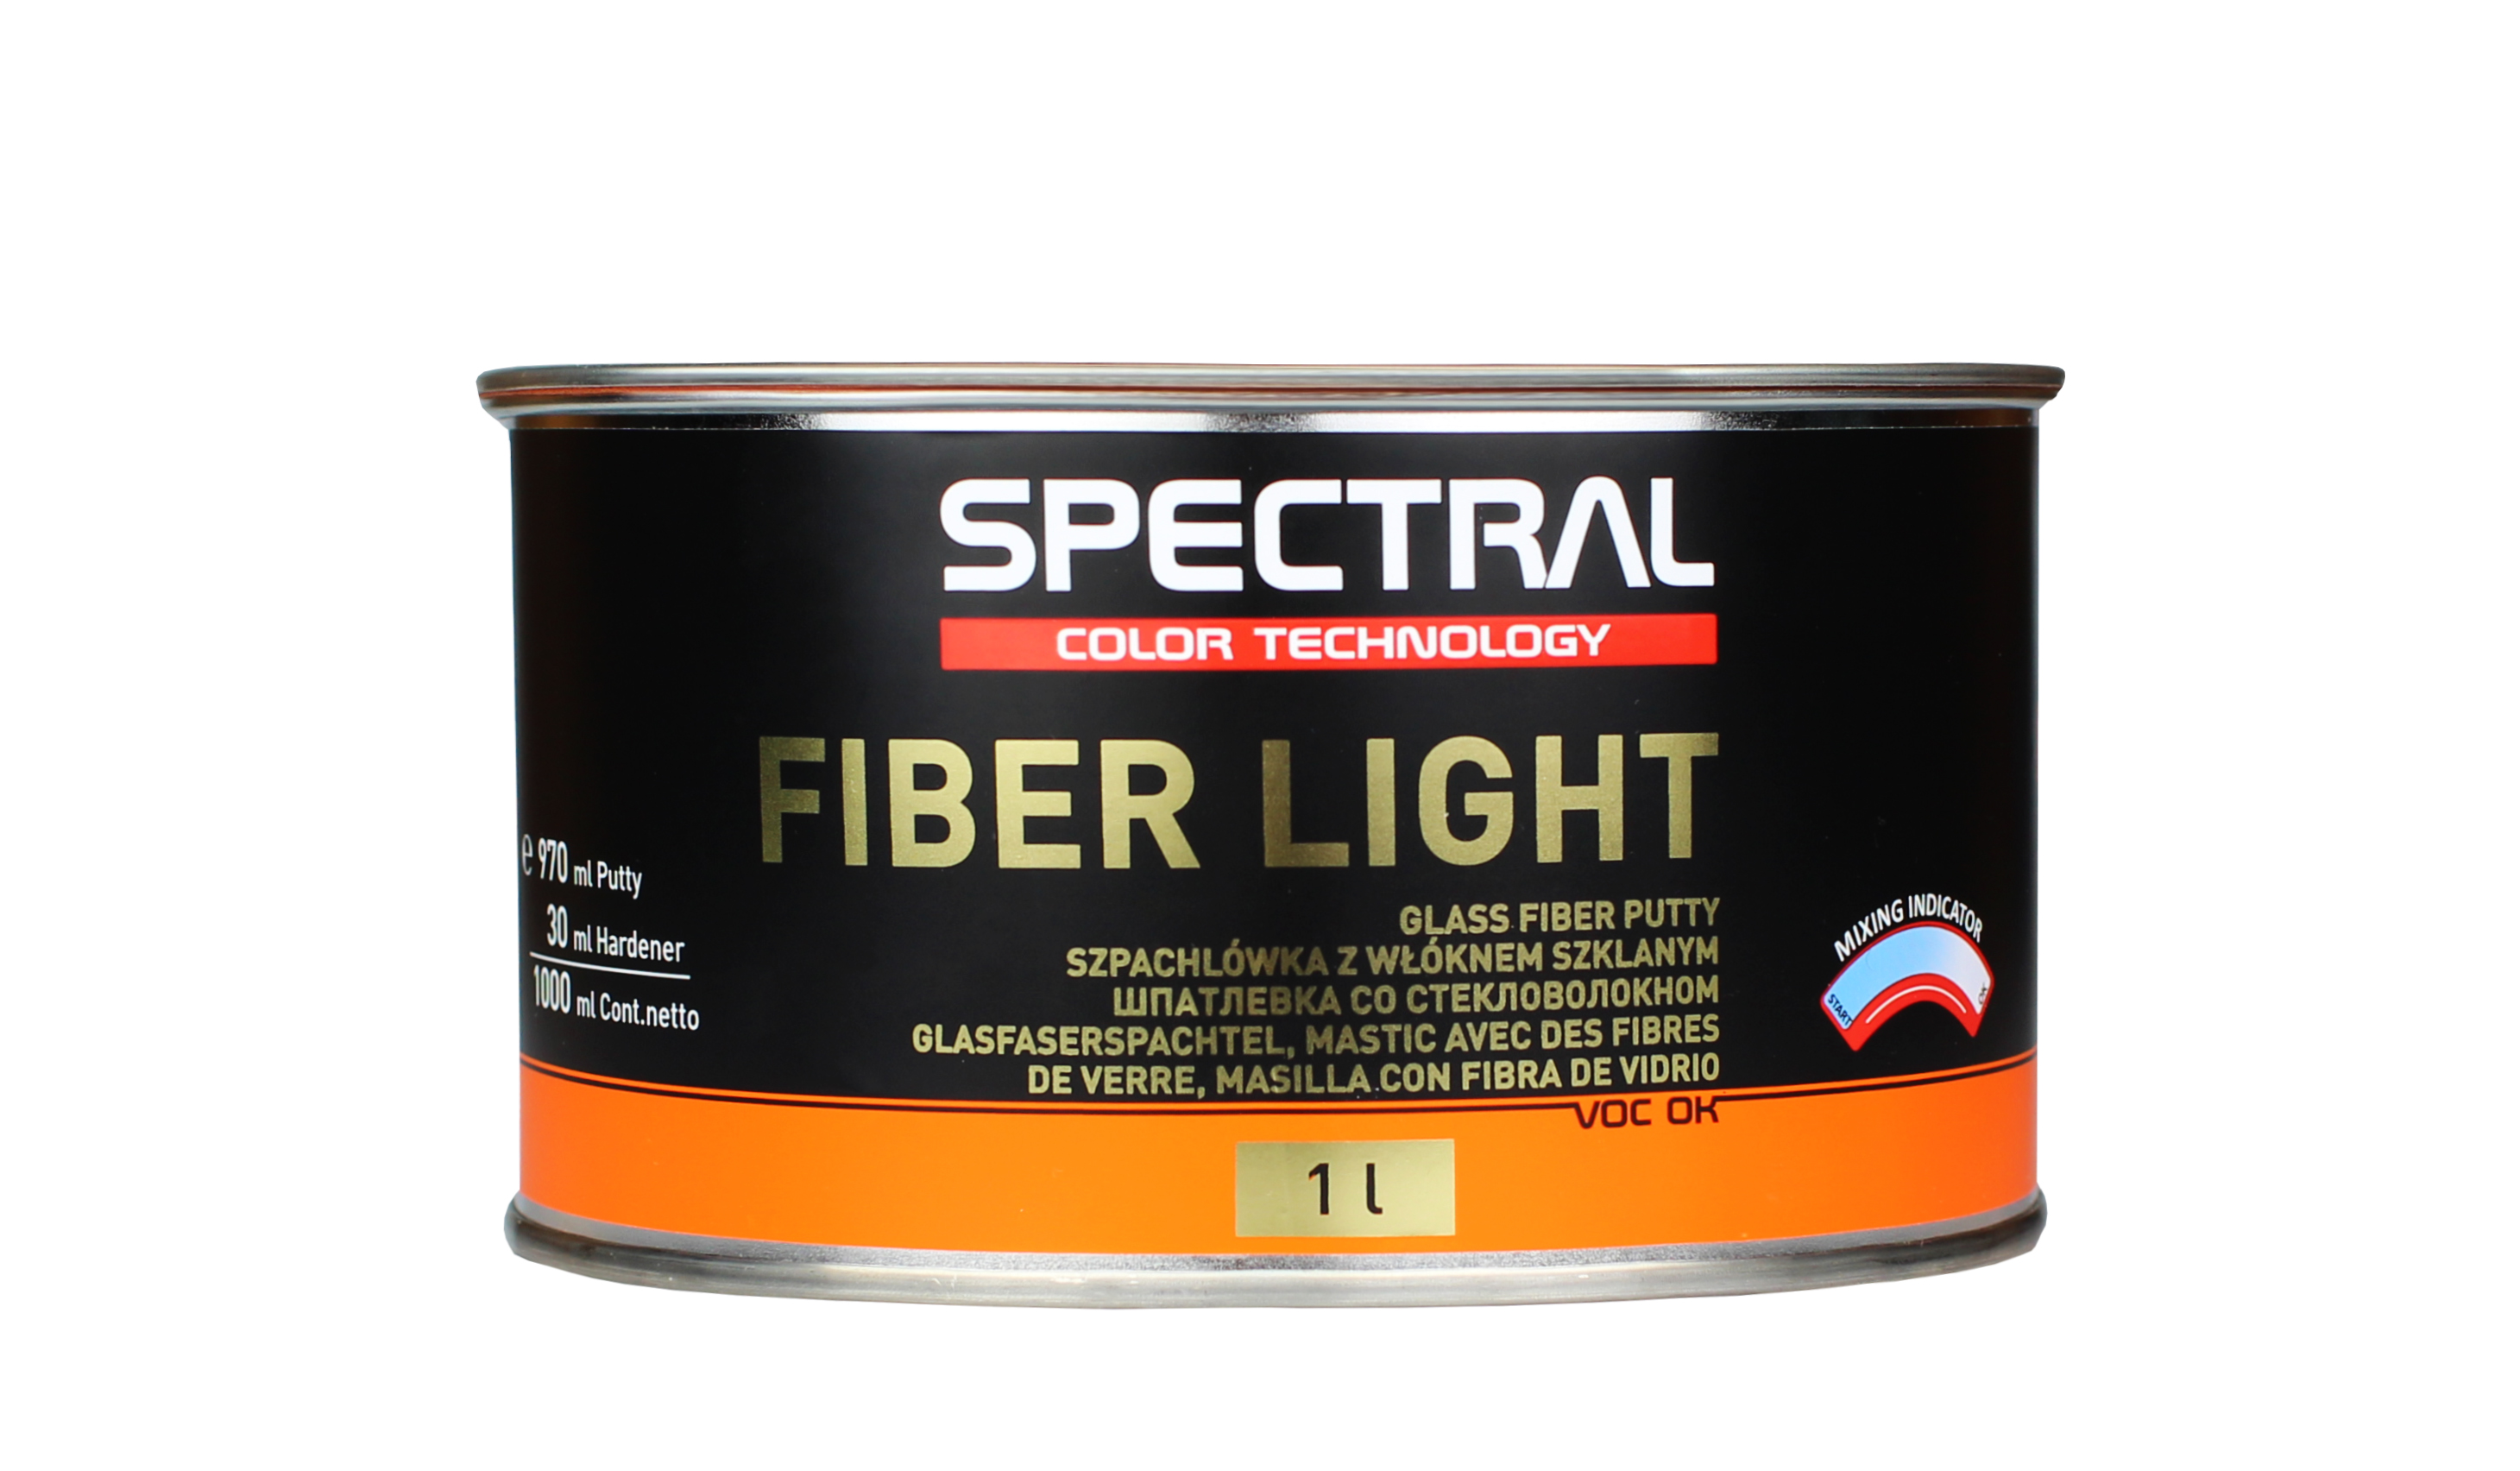 FIBER LIGHT - Glass fiber putty